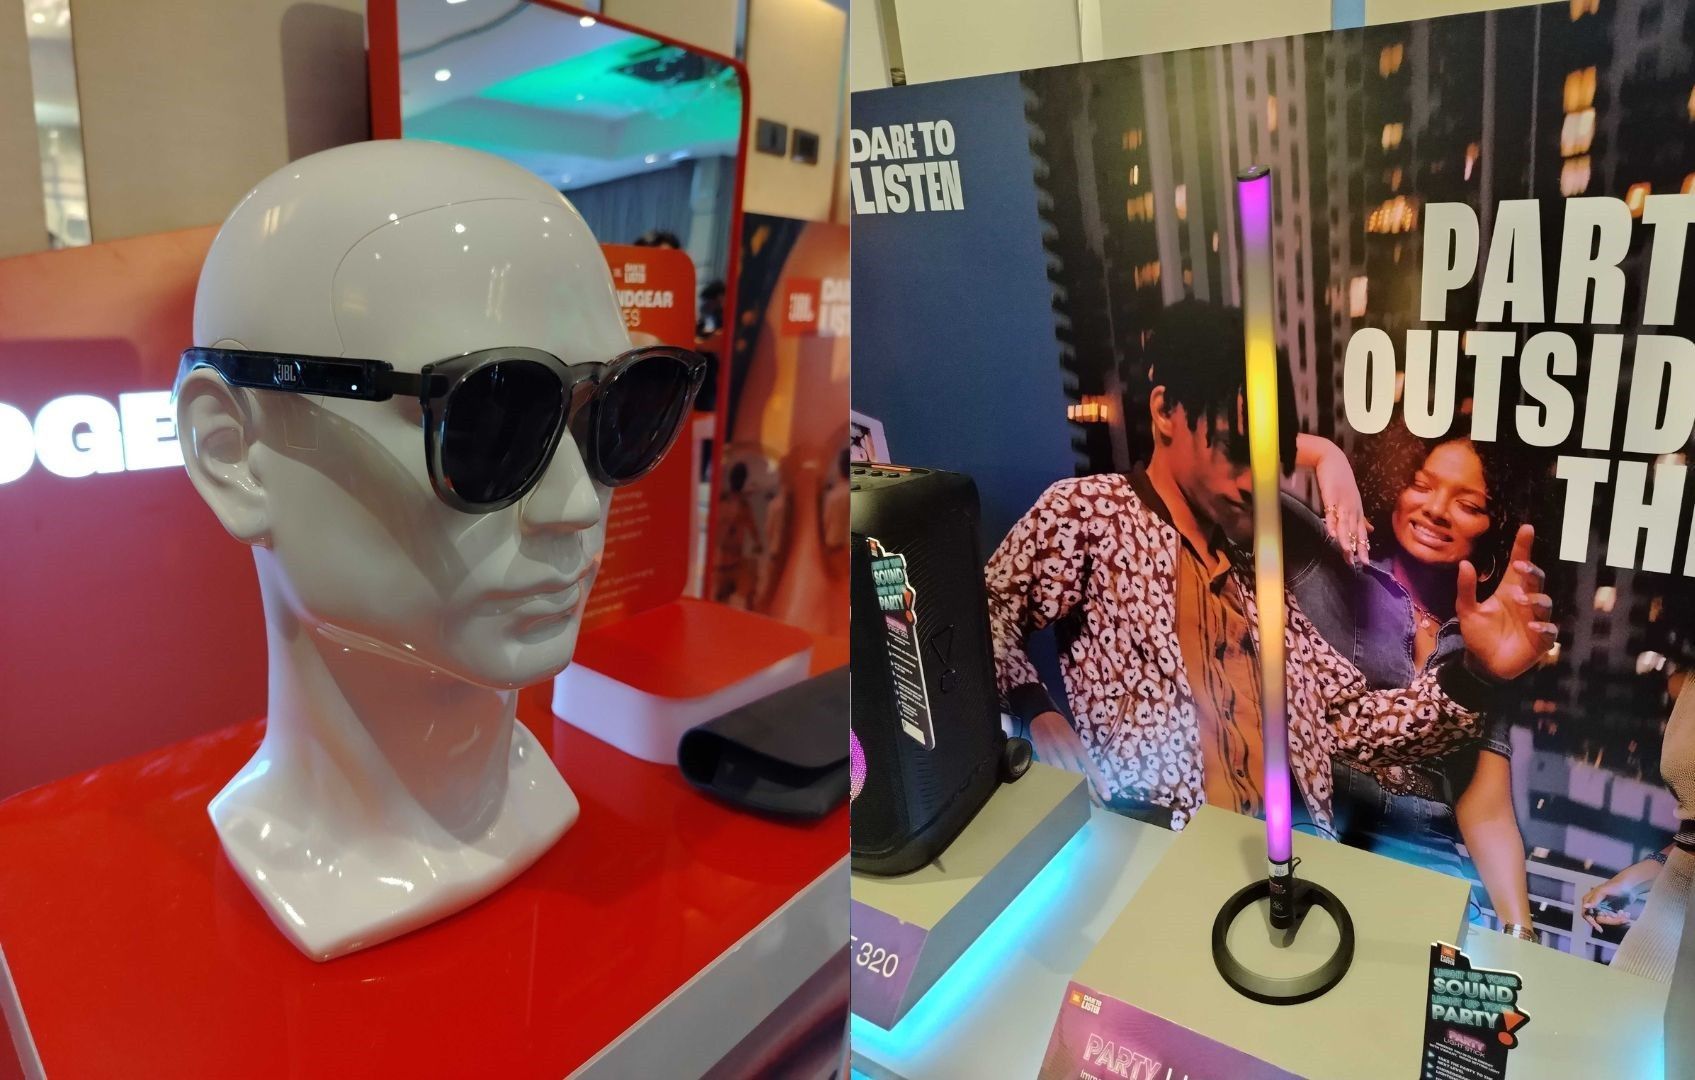 Eyeglasses with built-it speakers, 'lightsaber' speaker companion among new JBL innovations